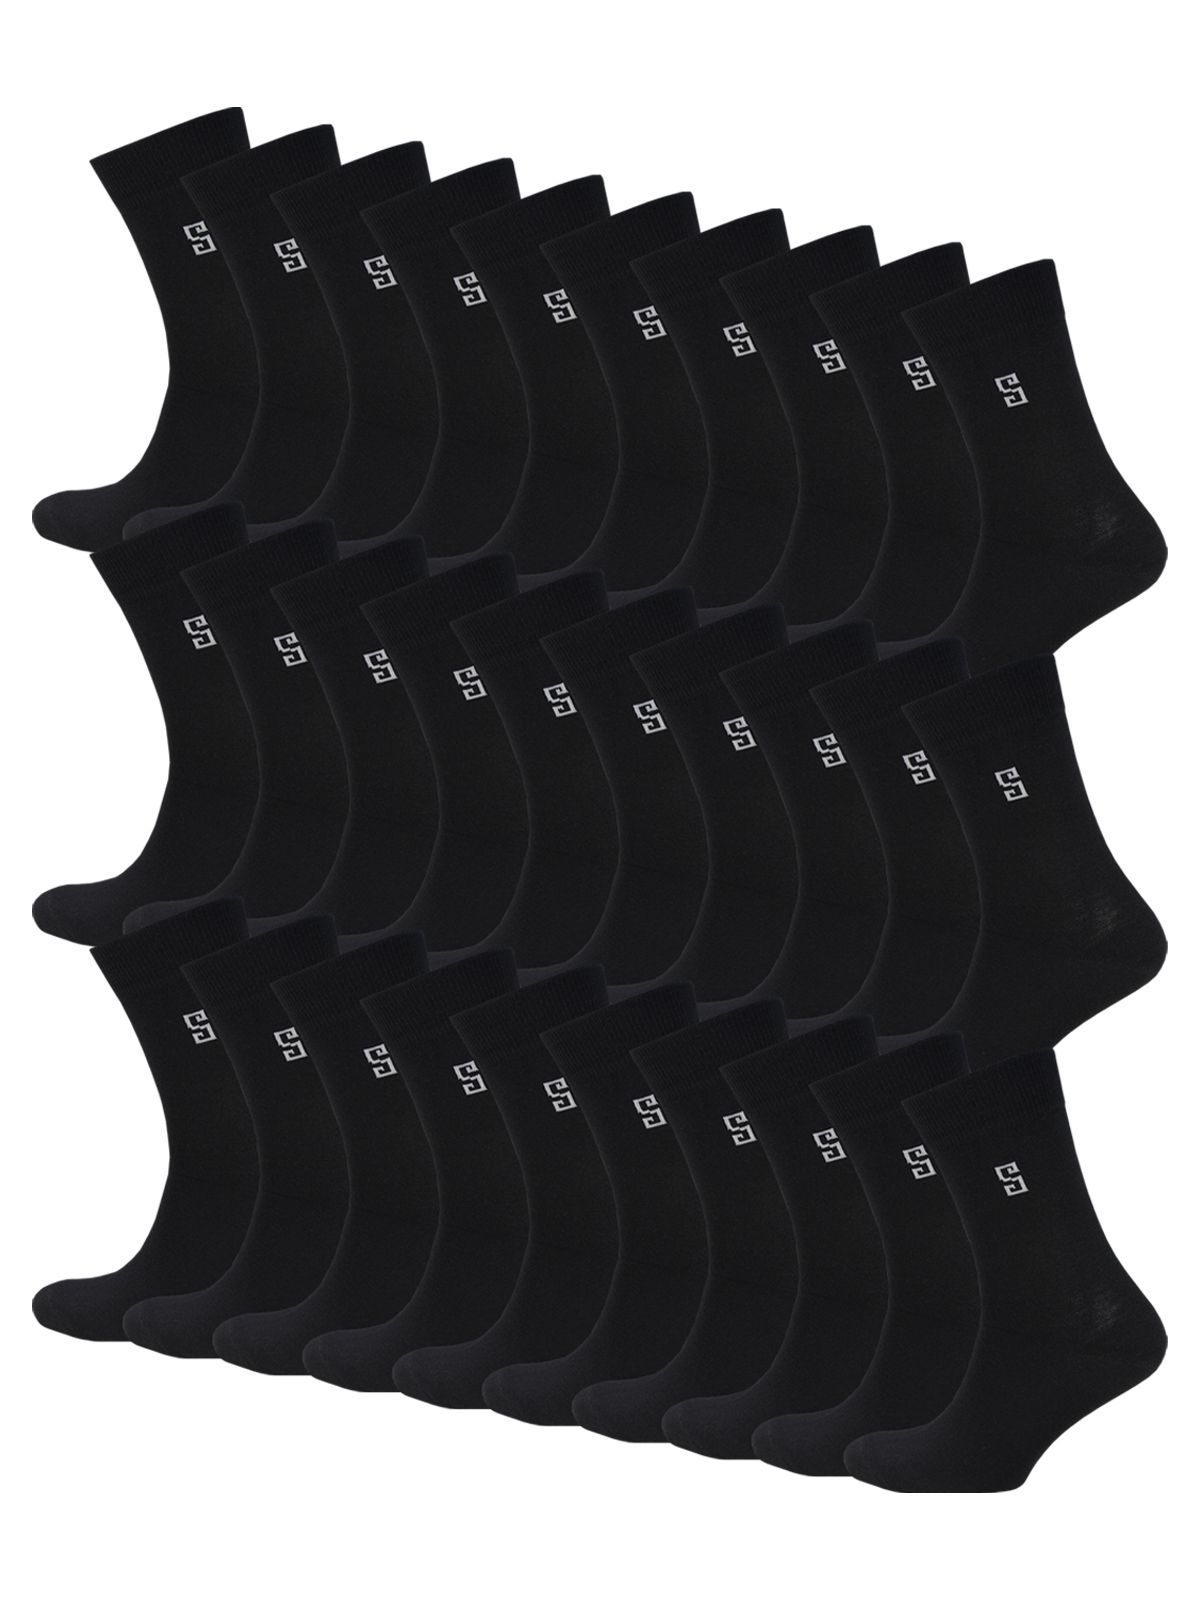 Комплект носков мужских Status Классические из хлопка 30 пар черных 27